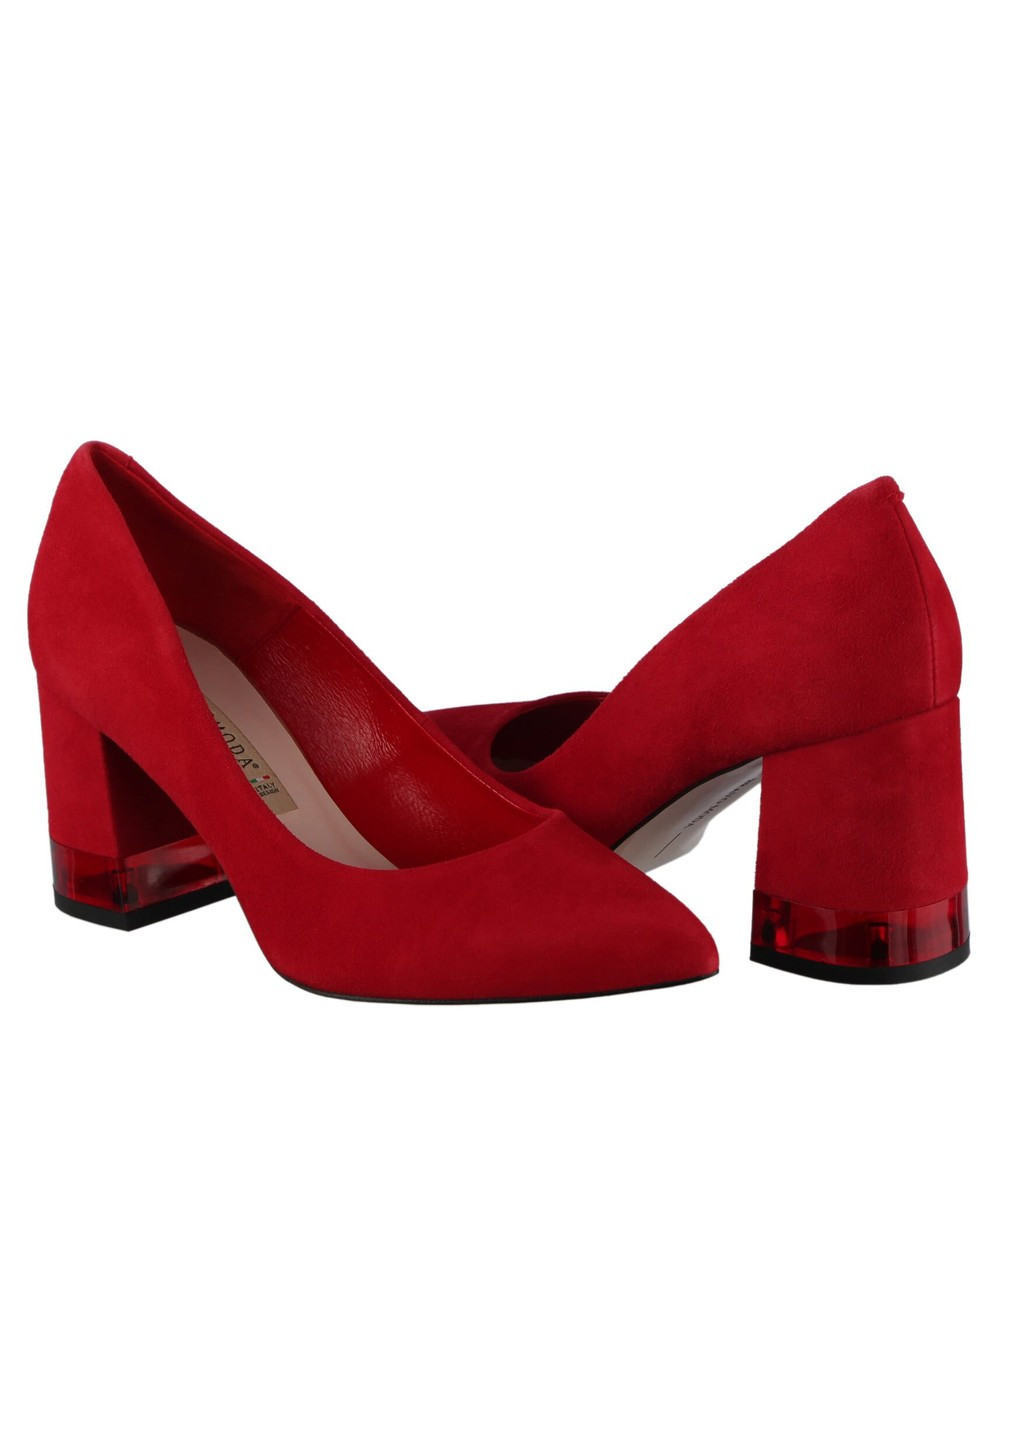 Женские туфли на каблуке 196061, Красный, 38, 2999860385793 Bravo Moda на высоком каблуке